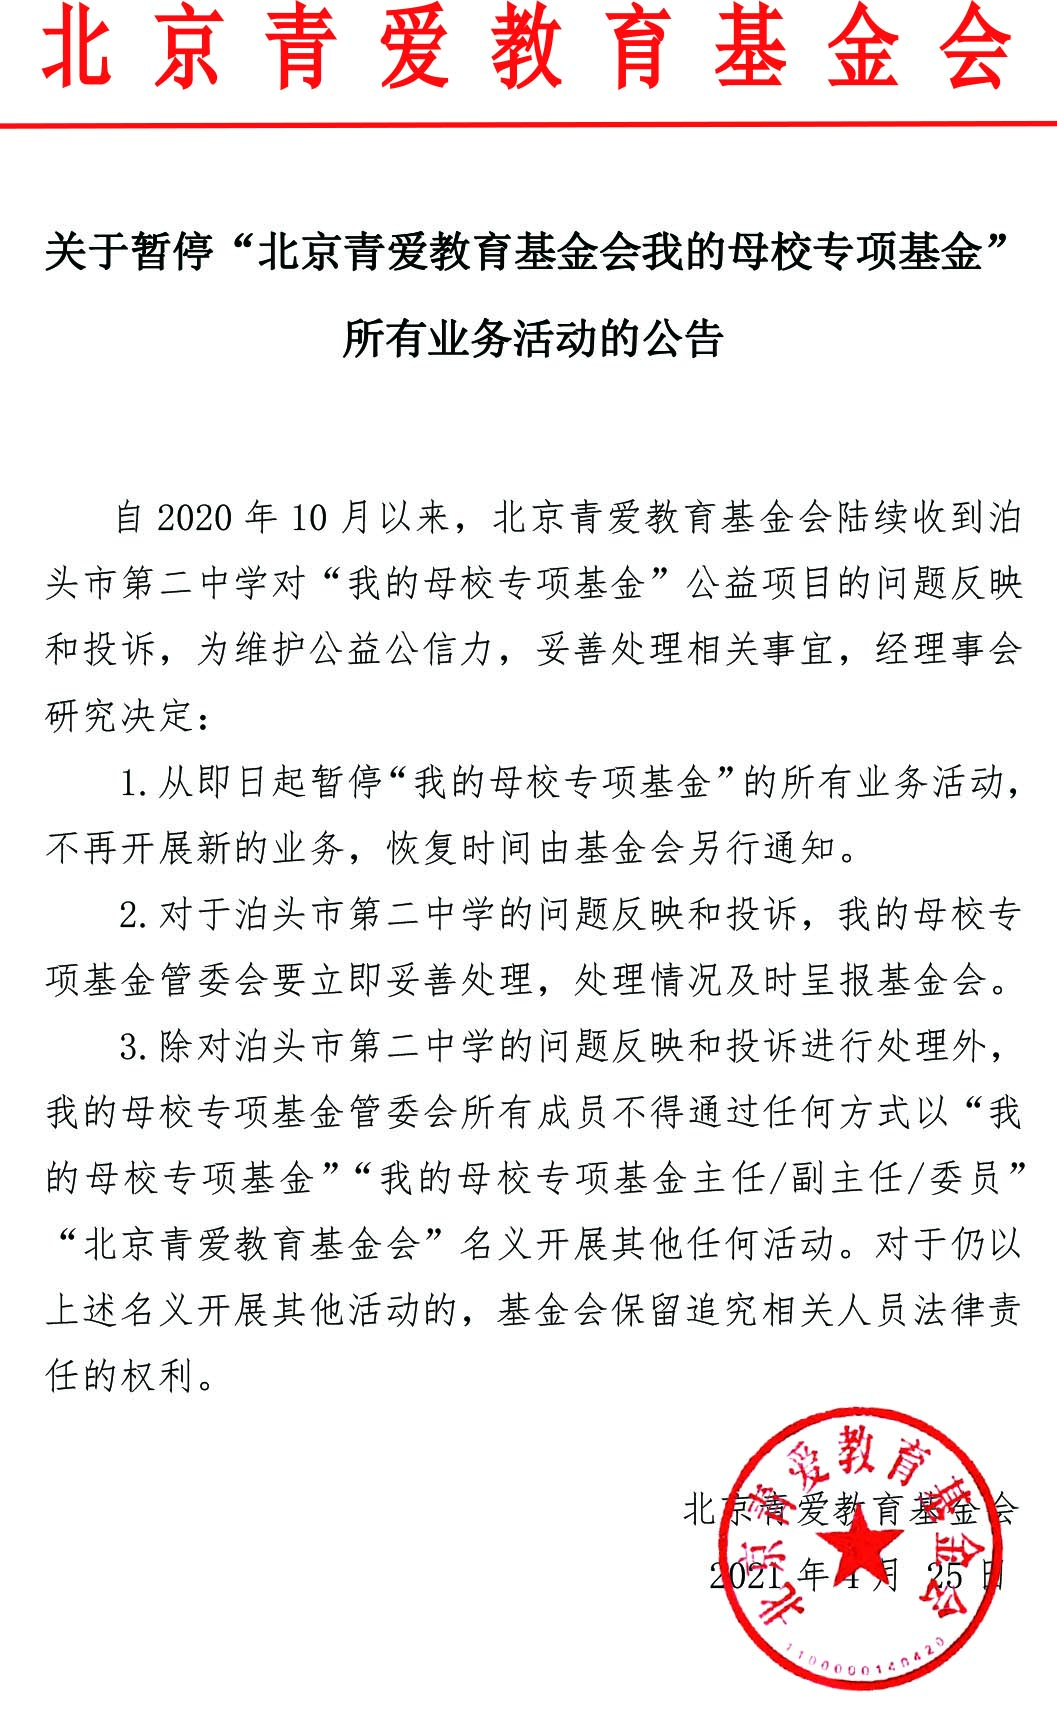 关于暂停“北京青爱教育基金会我的母校专项基金”所有业务活动的公告